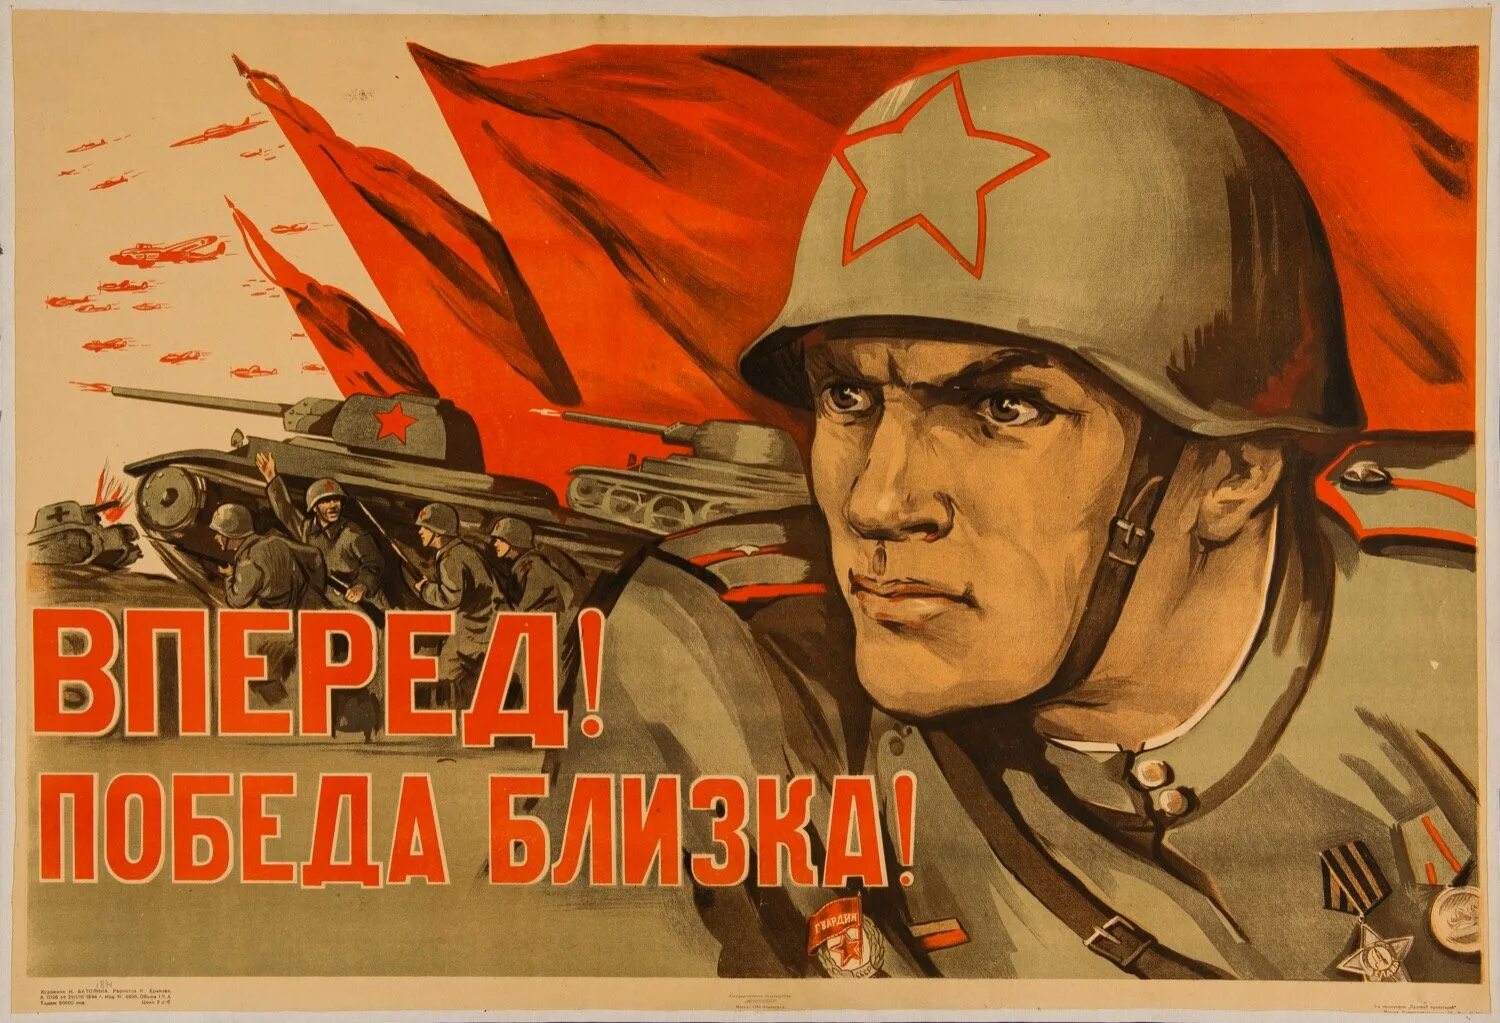 Плакаты Великой Отечественной войны. Плакаты в годы Великой Отечественной войны. Вперед победа близка плакат. Будет сильная победа